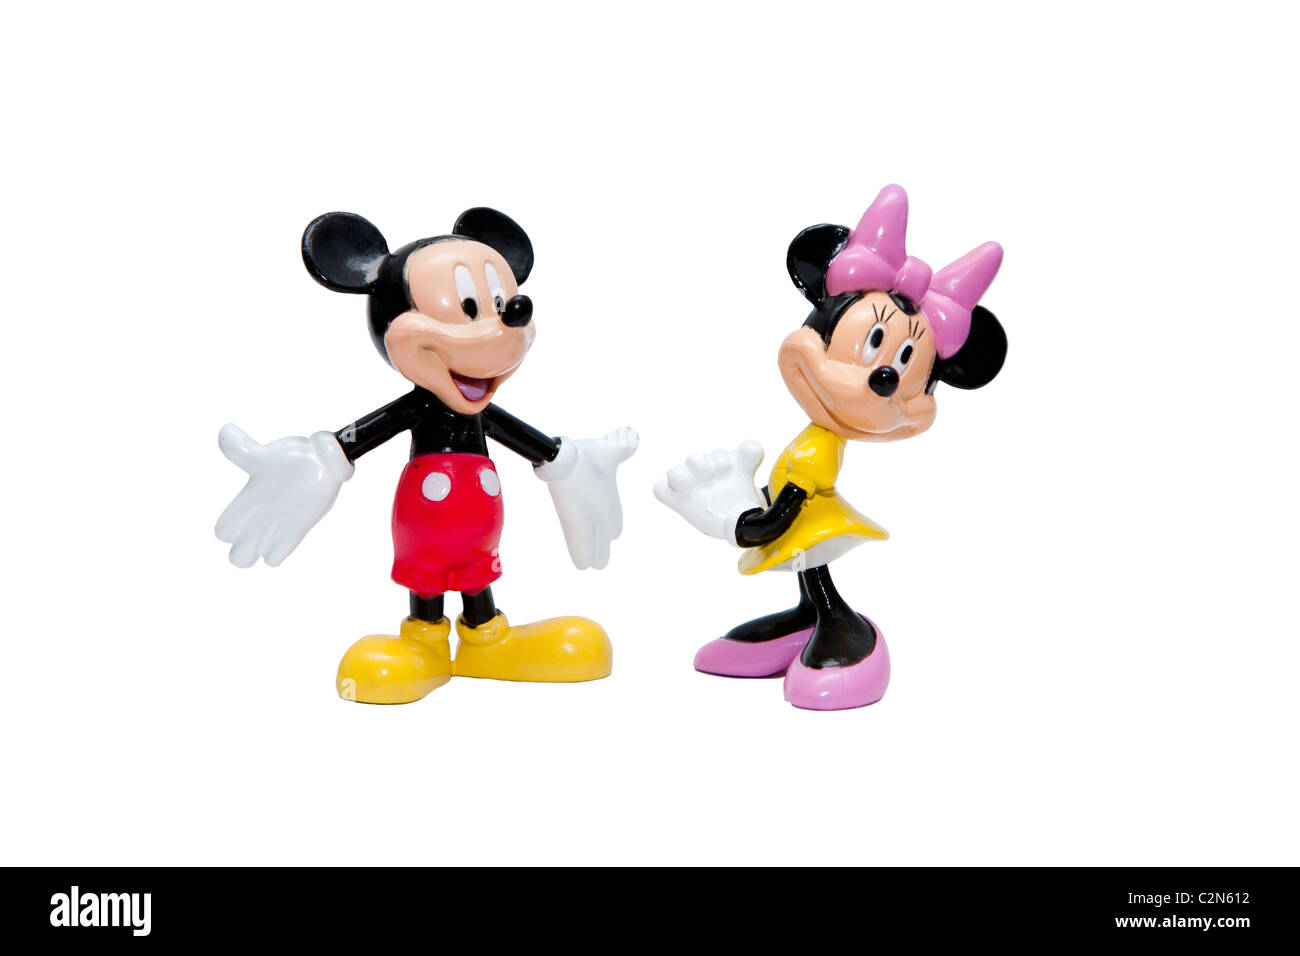 Micky y Minnie Mouse muñecos de dibujos animados de Walt Disney, aislado. Foto de stock